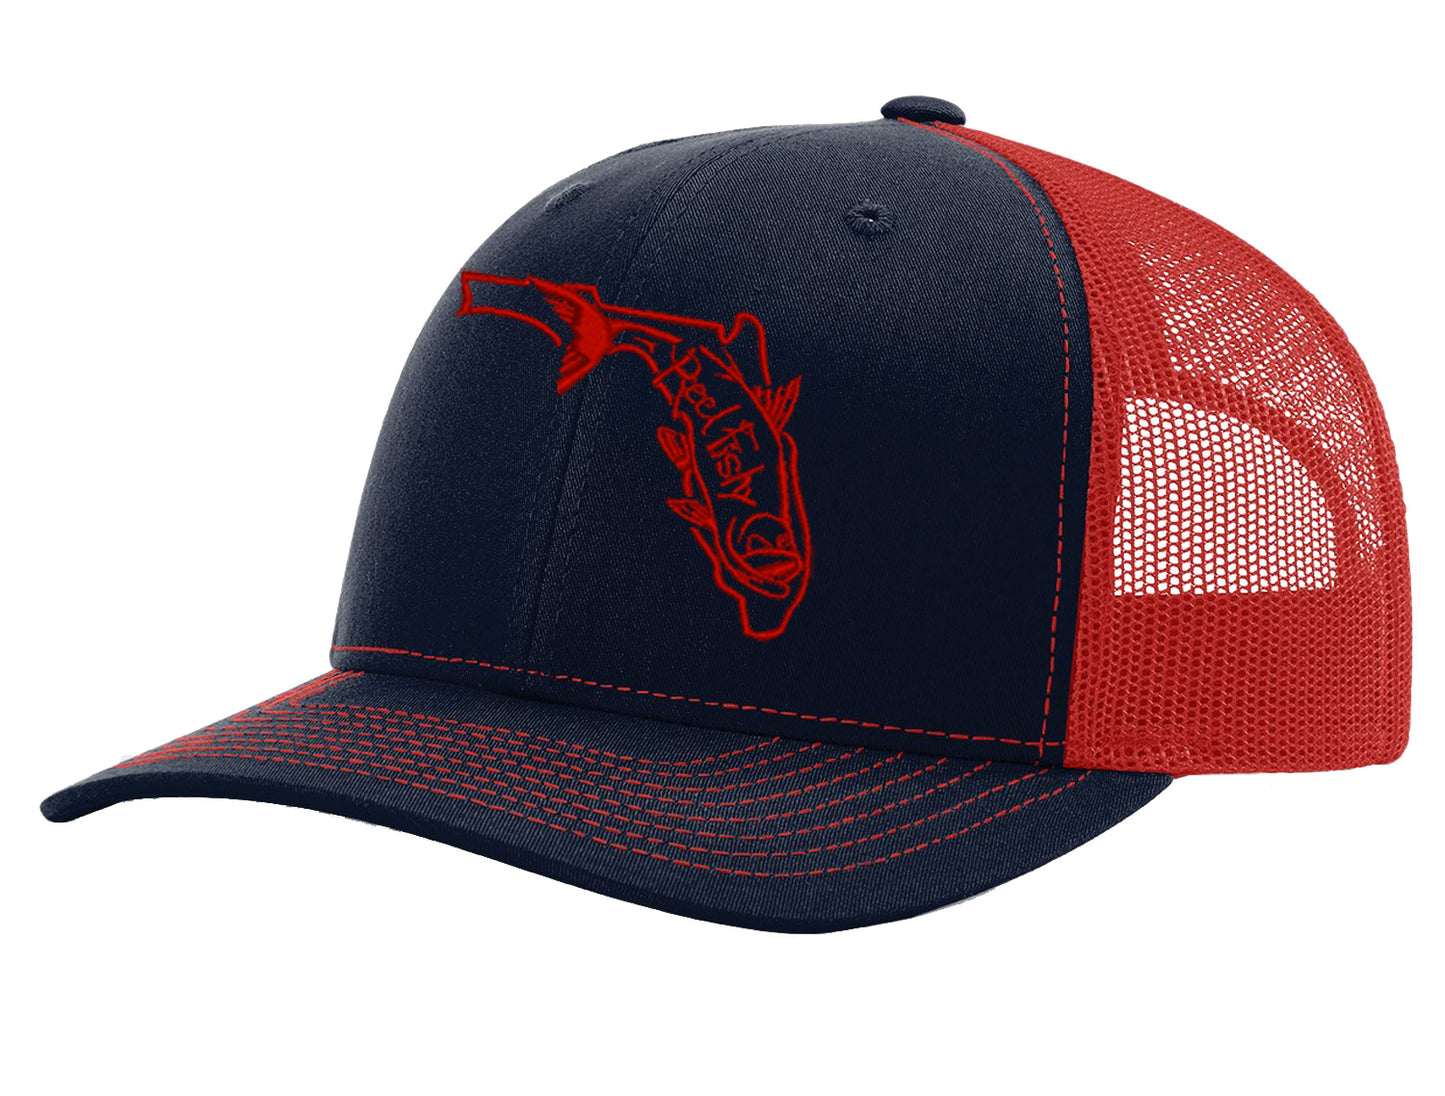 Ross Reels Trucker Hat Old Logo Mesh Back Fishing Cap LIcensed USA